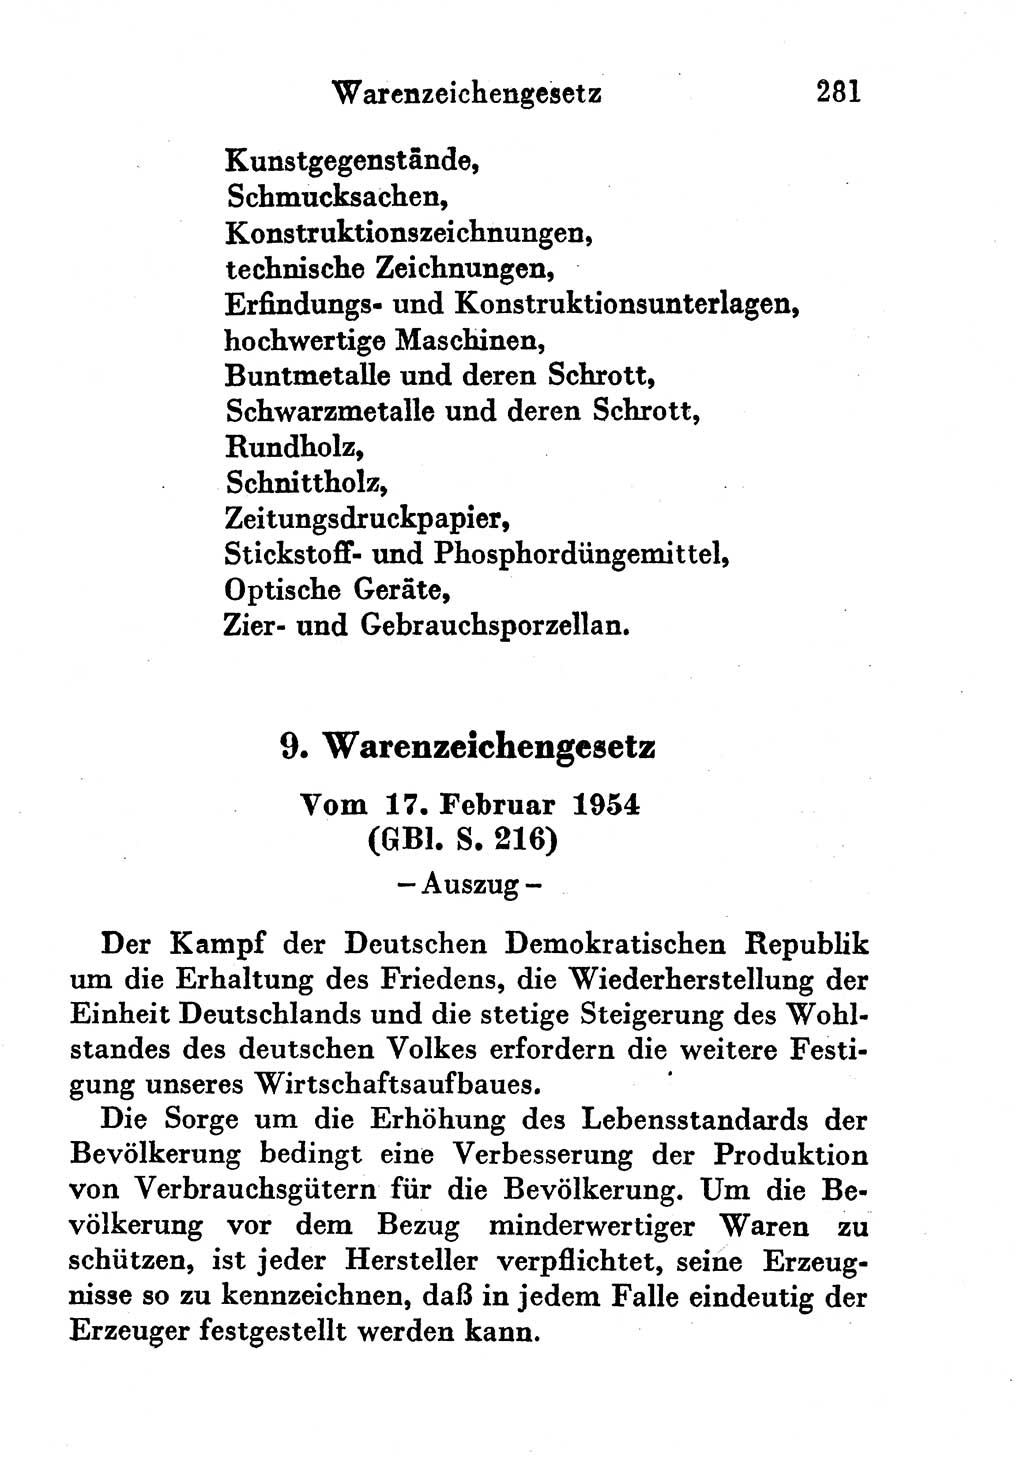 Strafgesetzbuch (StGB) und andere Strafgesetze [Deutsche Demokratische Republik (DDR)] 1956, Seite 281 (StGB Strafges. DDR 1956, S. 281)